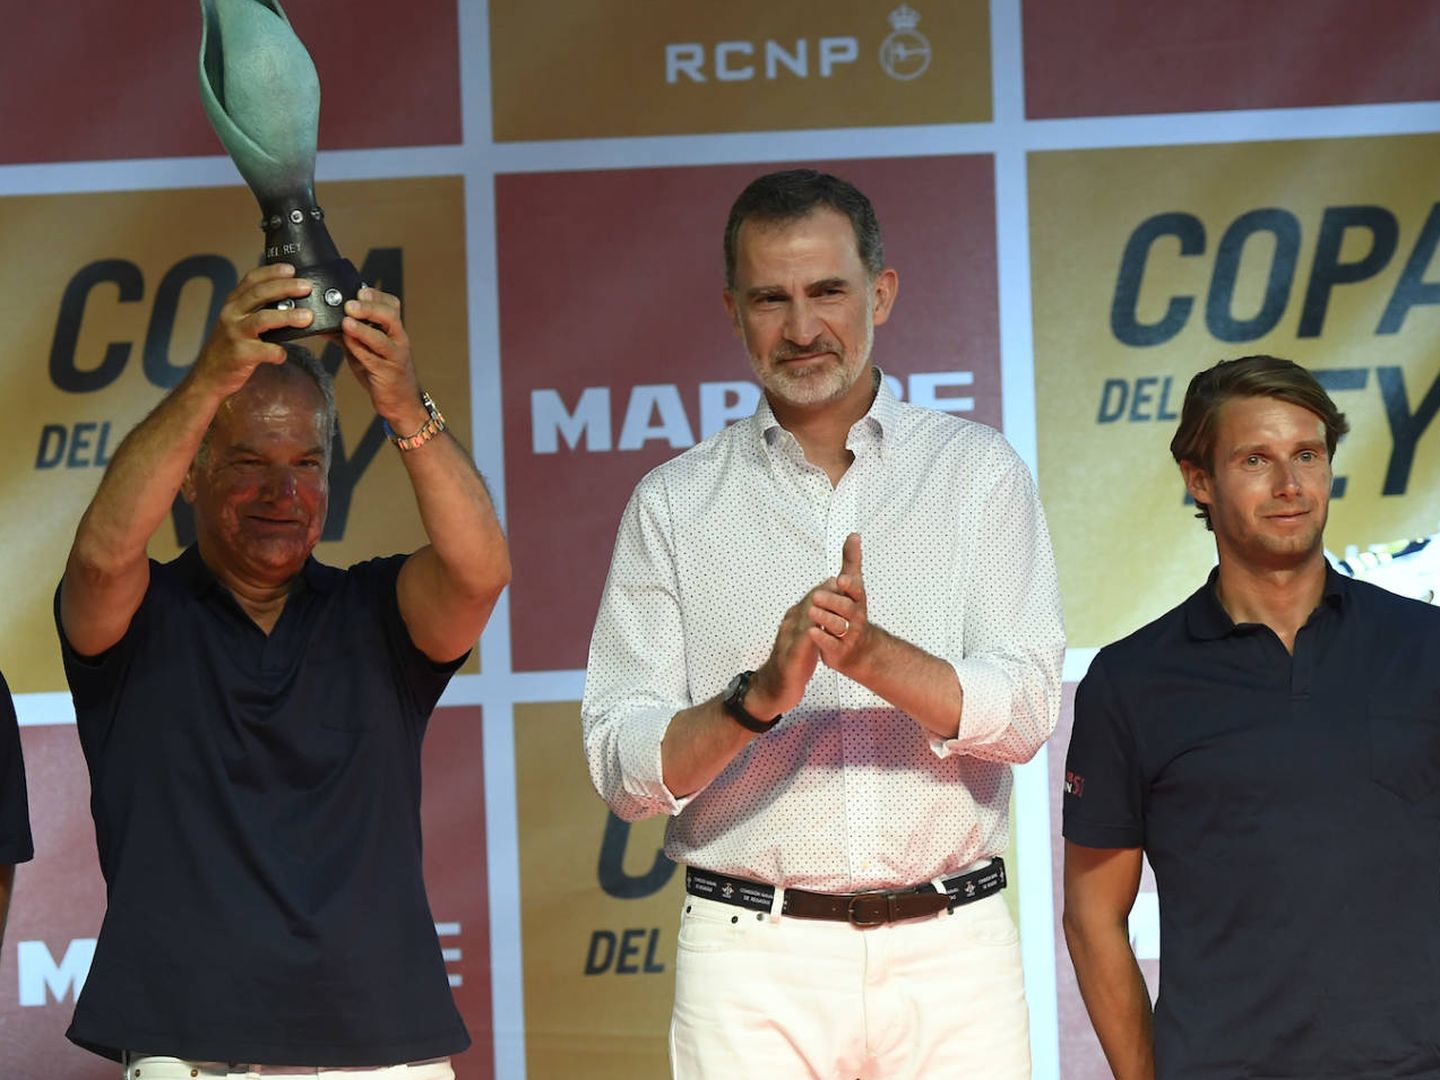 El rey Felipe VI entregando los premios de la Copa del Rey MAPFRE. (Limited Pictures)